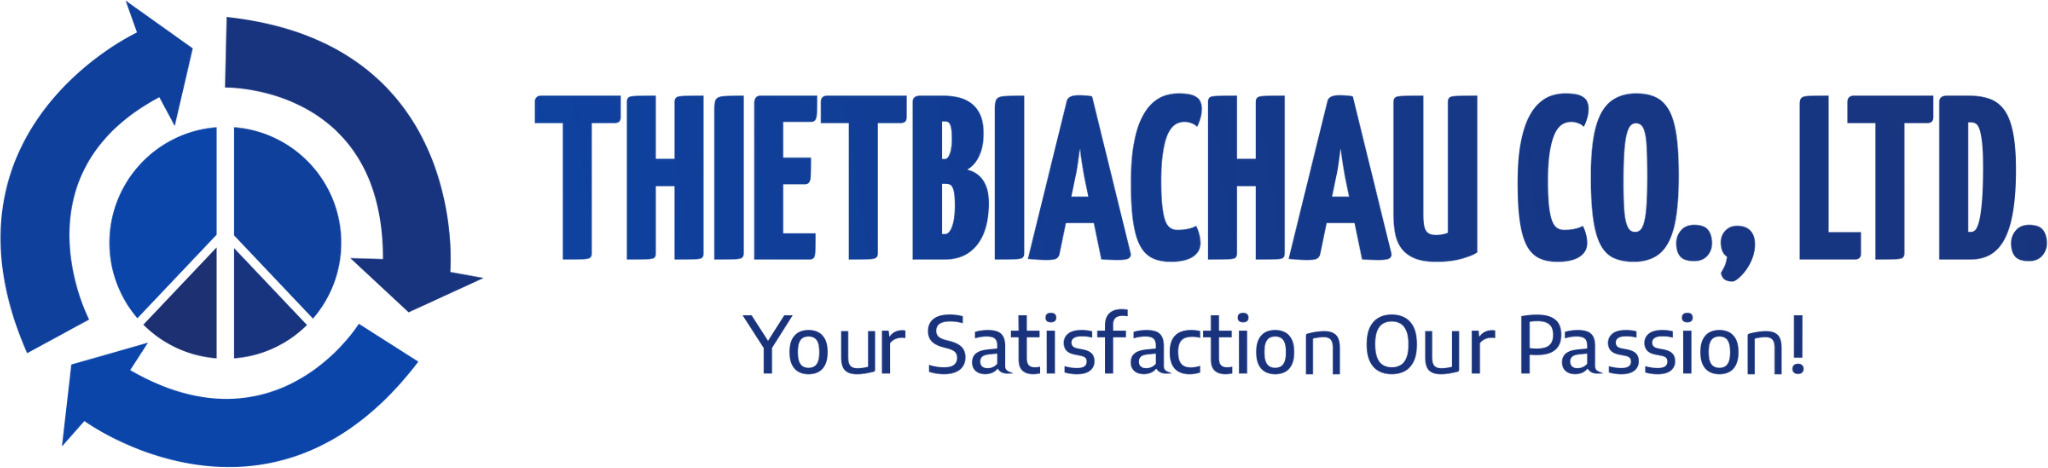 Thietbiachau Co., Ltd